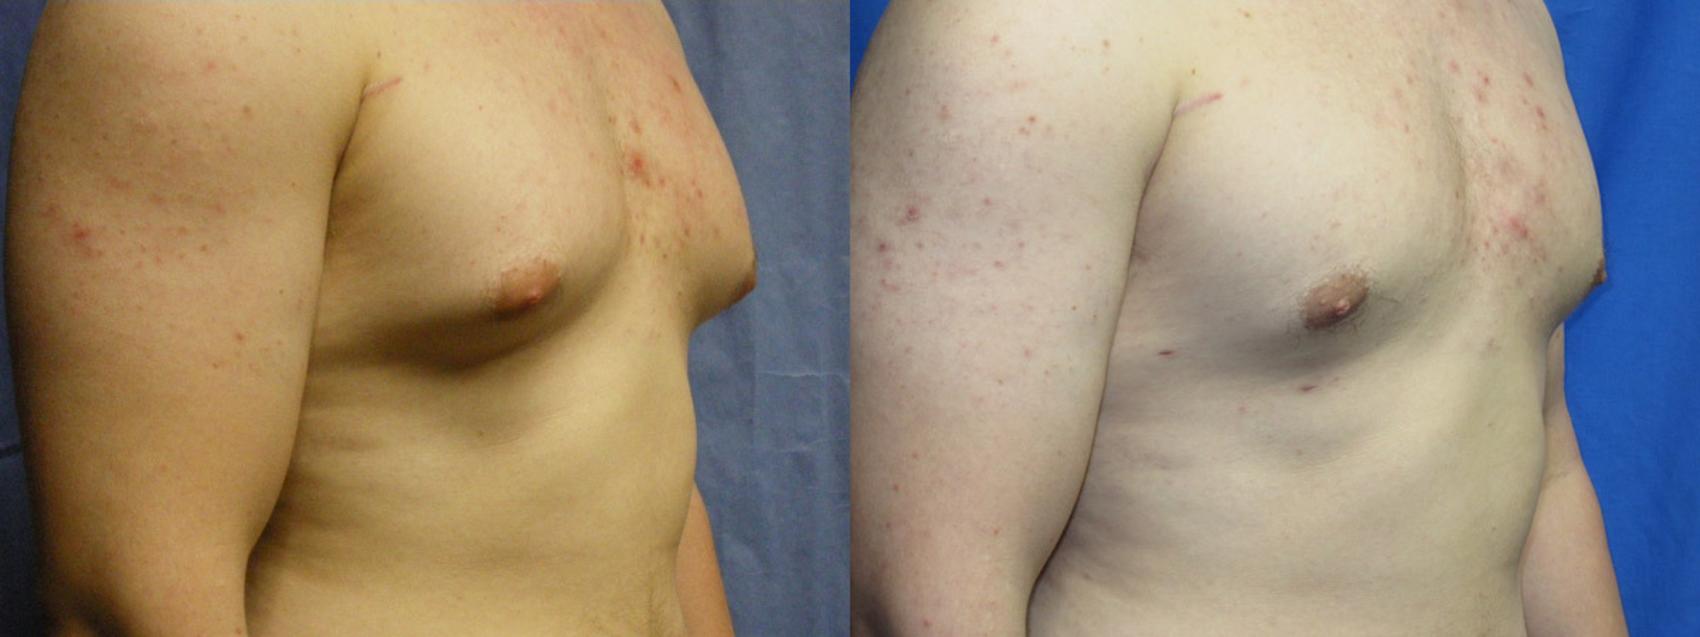 liposuction for men's chest